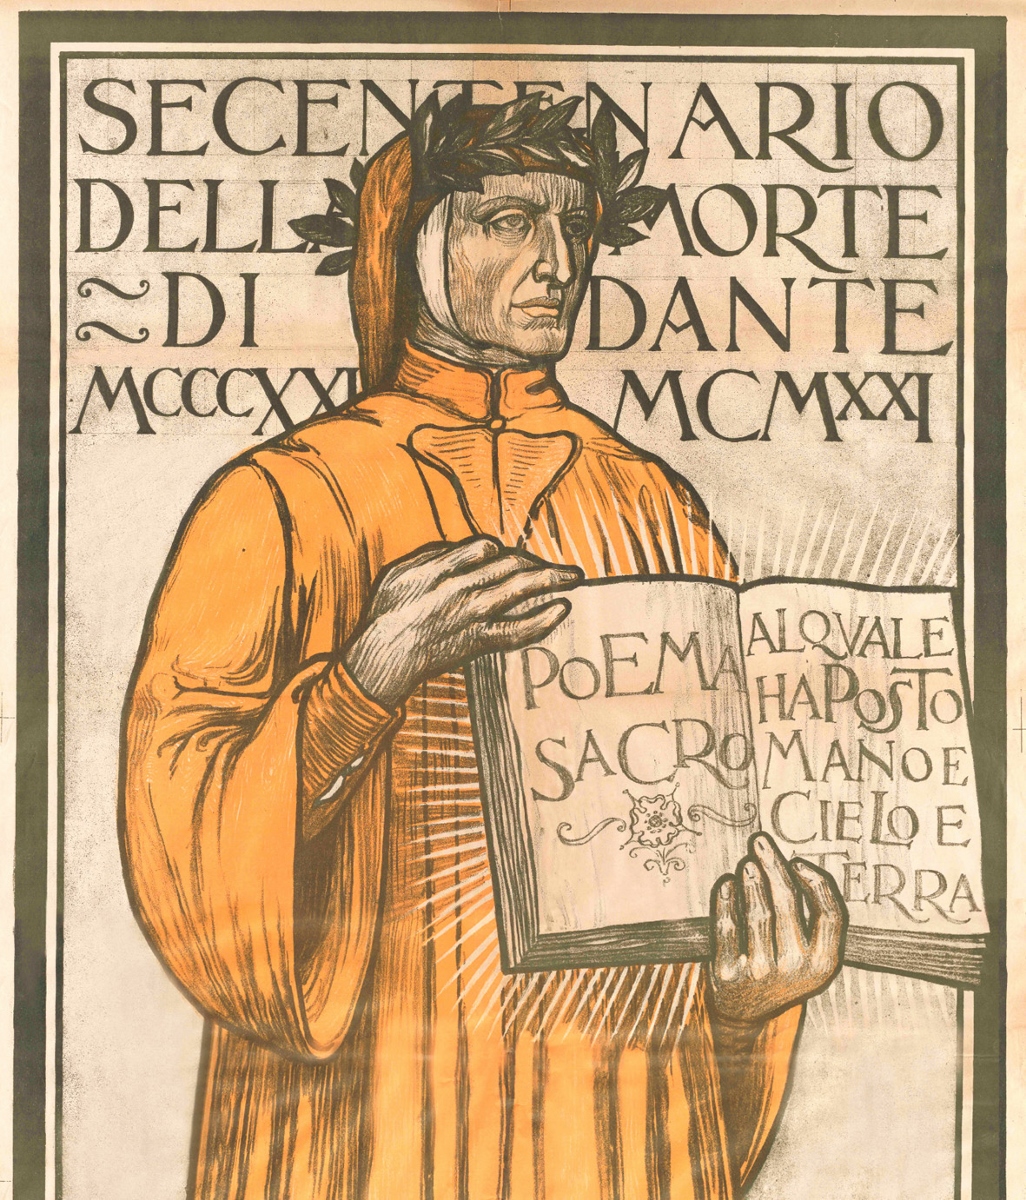 Ravenna 1921: il Secentenario della morte di Dante